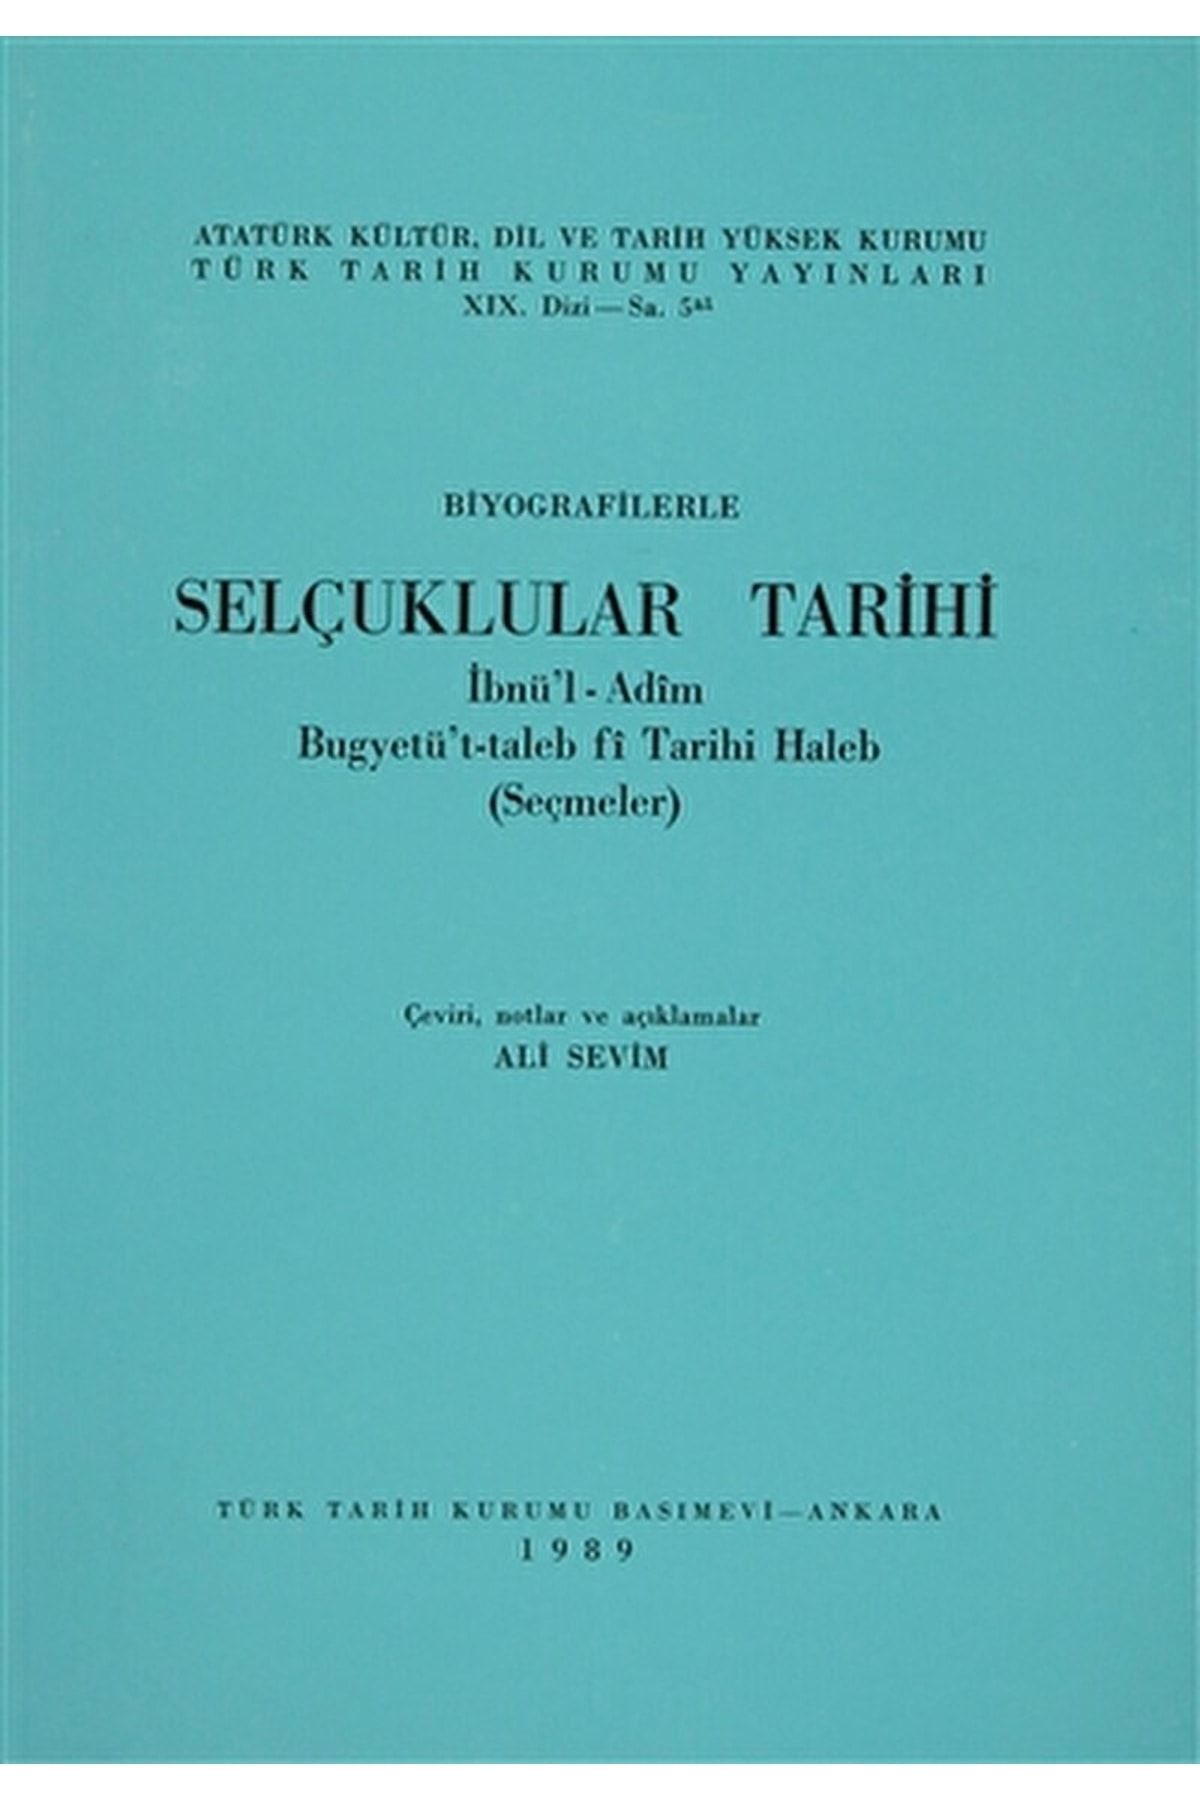 Türk Tarih Kurumu Yayınları Biyografilerle Selçuklular Tarihi / Kolektif / / 3990000008293